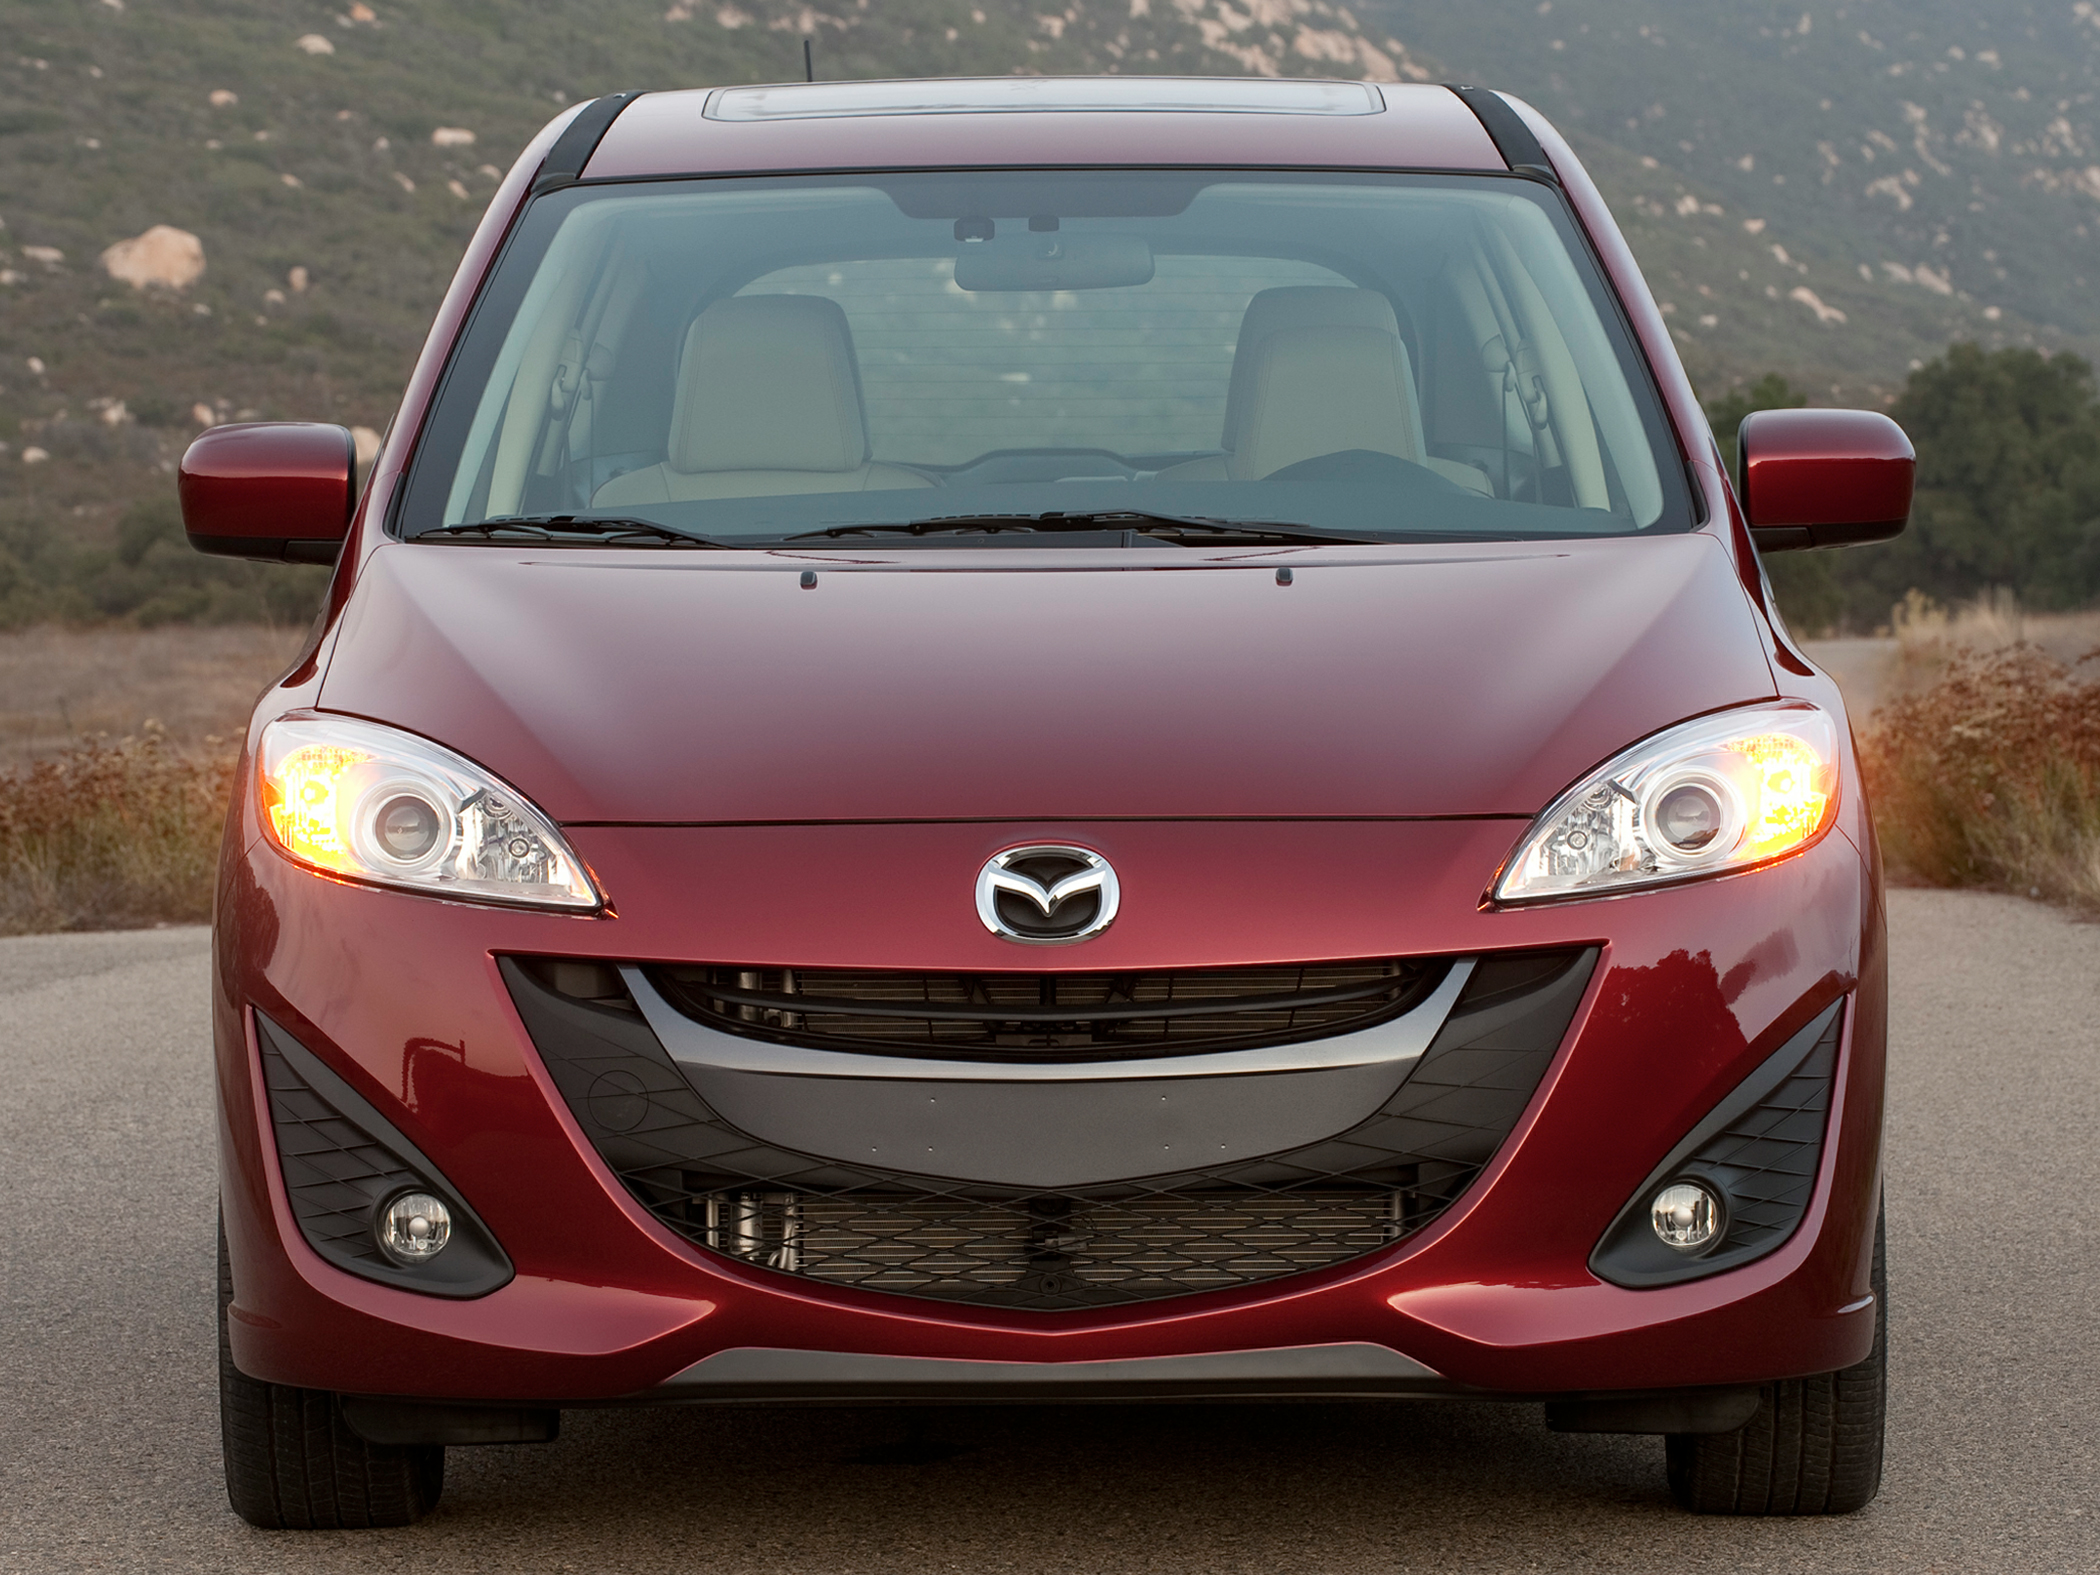 2013 Mazda Mazda5